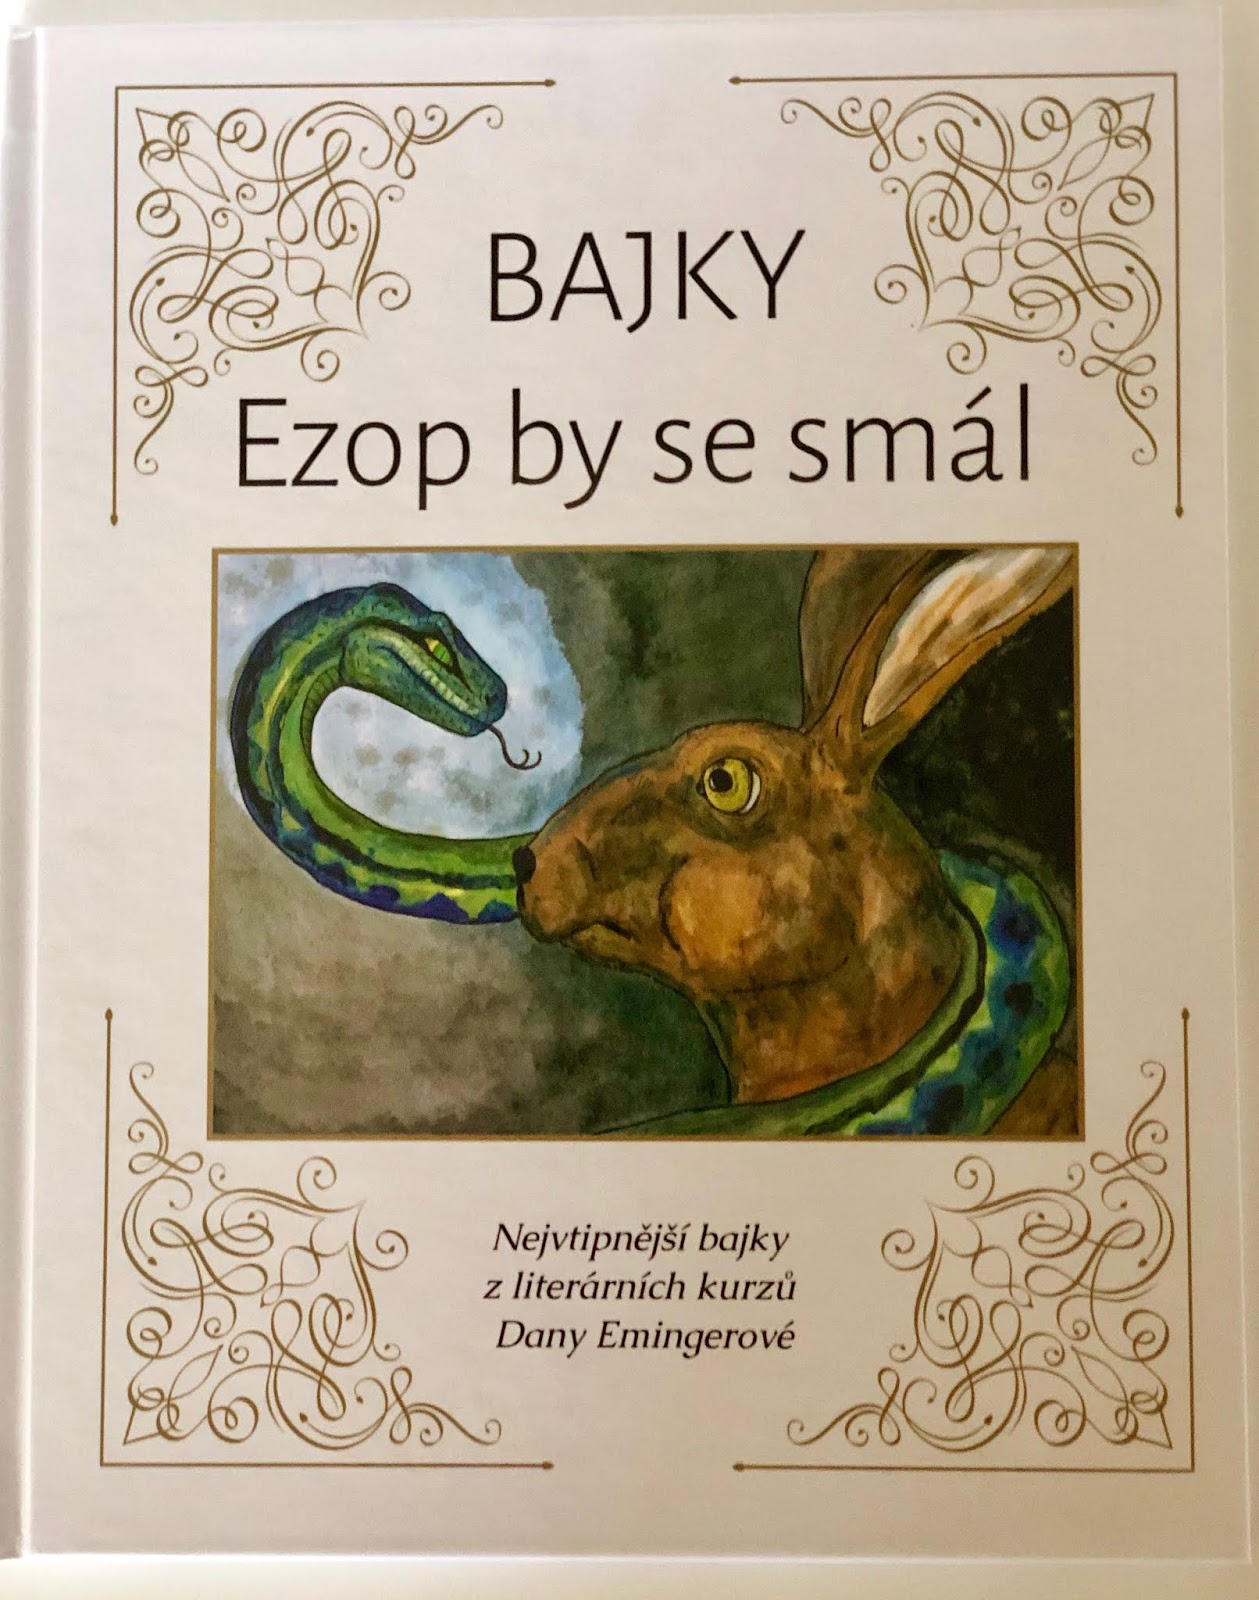 bajky - ezop